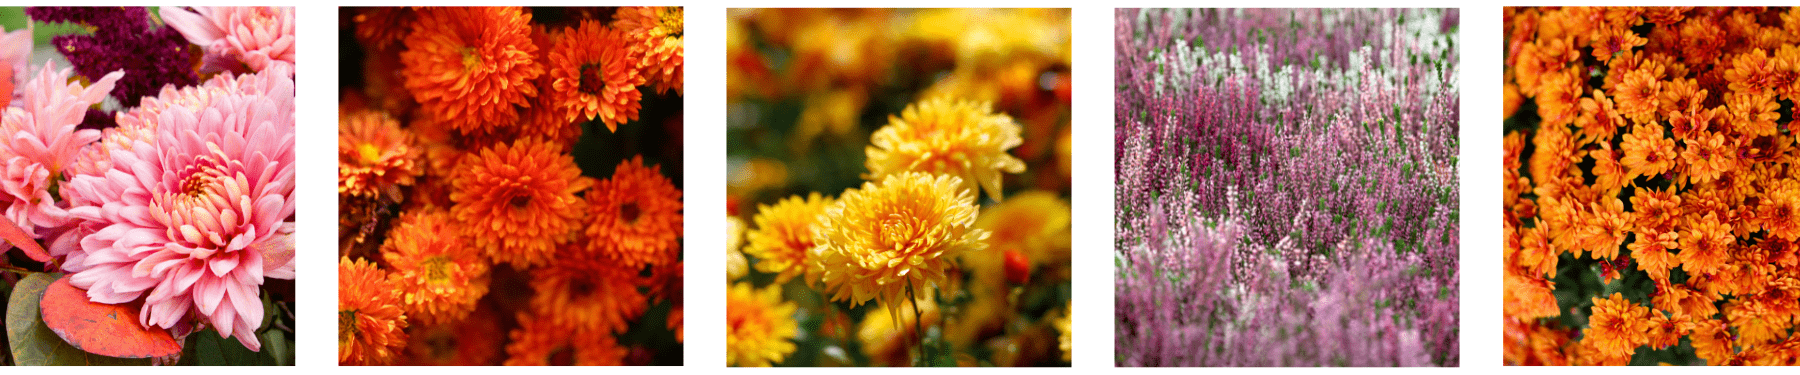 מגוון רחב של פרחים שפורחים בסתיו - פרחי סתיו